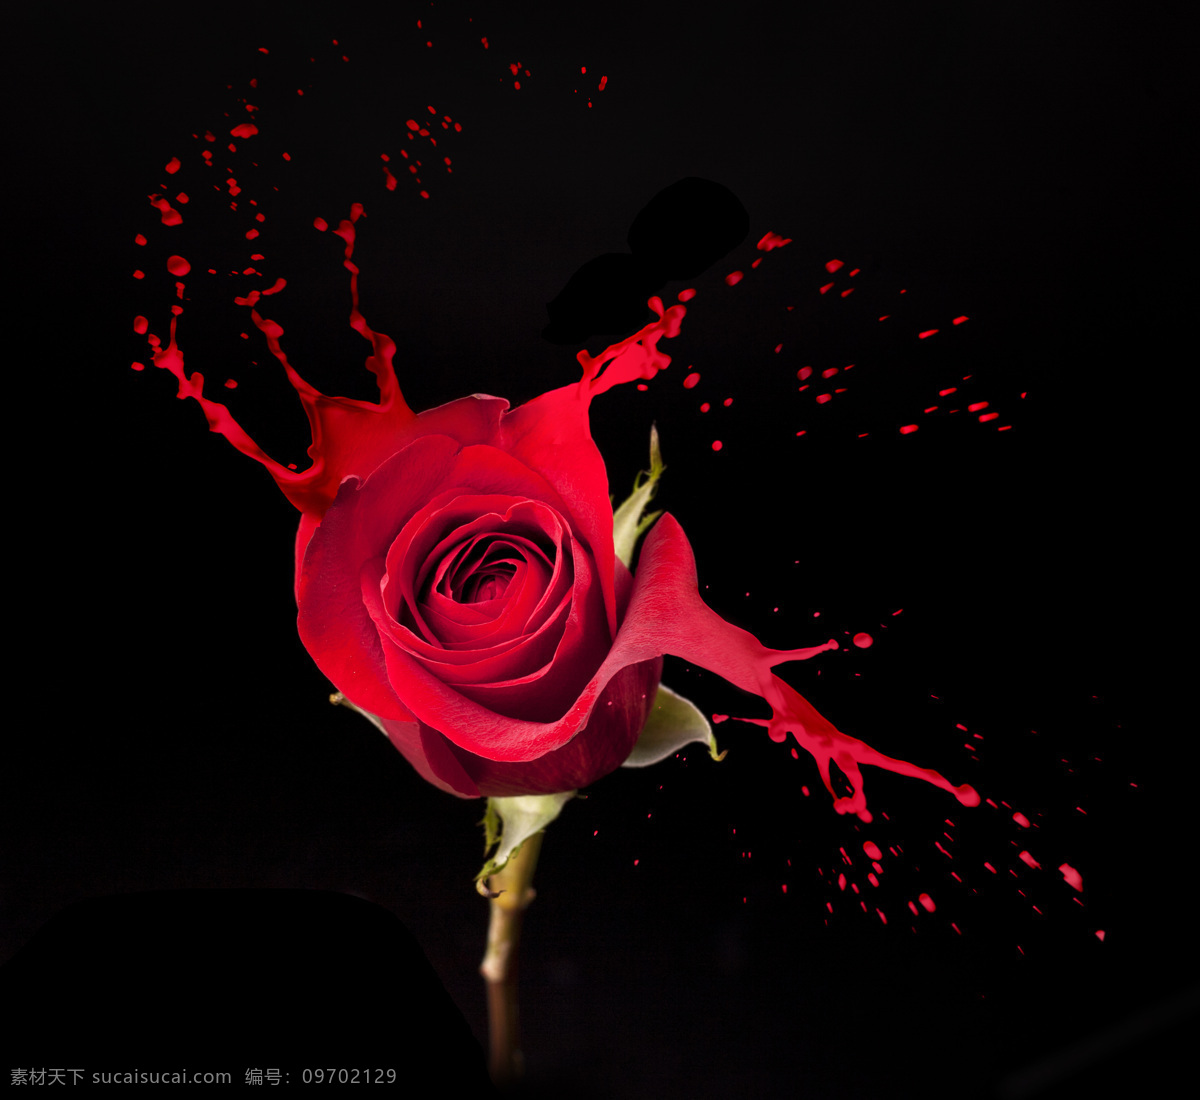 红玫瑰 颜料 喷溅 鲜花 动感喷溅 飞溅的颜料 花朵 花卉 漂亮花朵 美丽鲜花 鲜花摄影 花草树木 生物世界